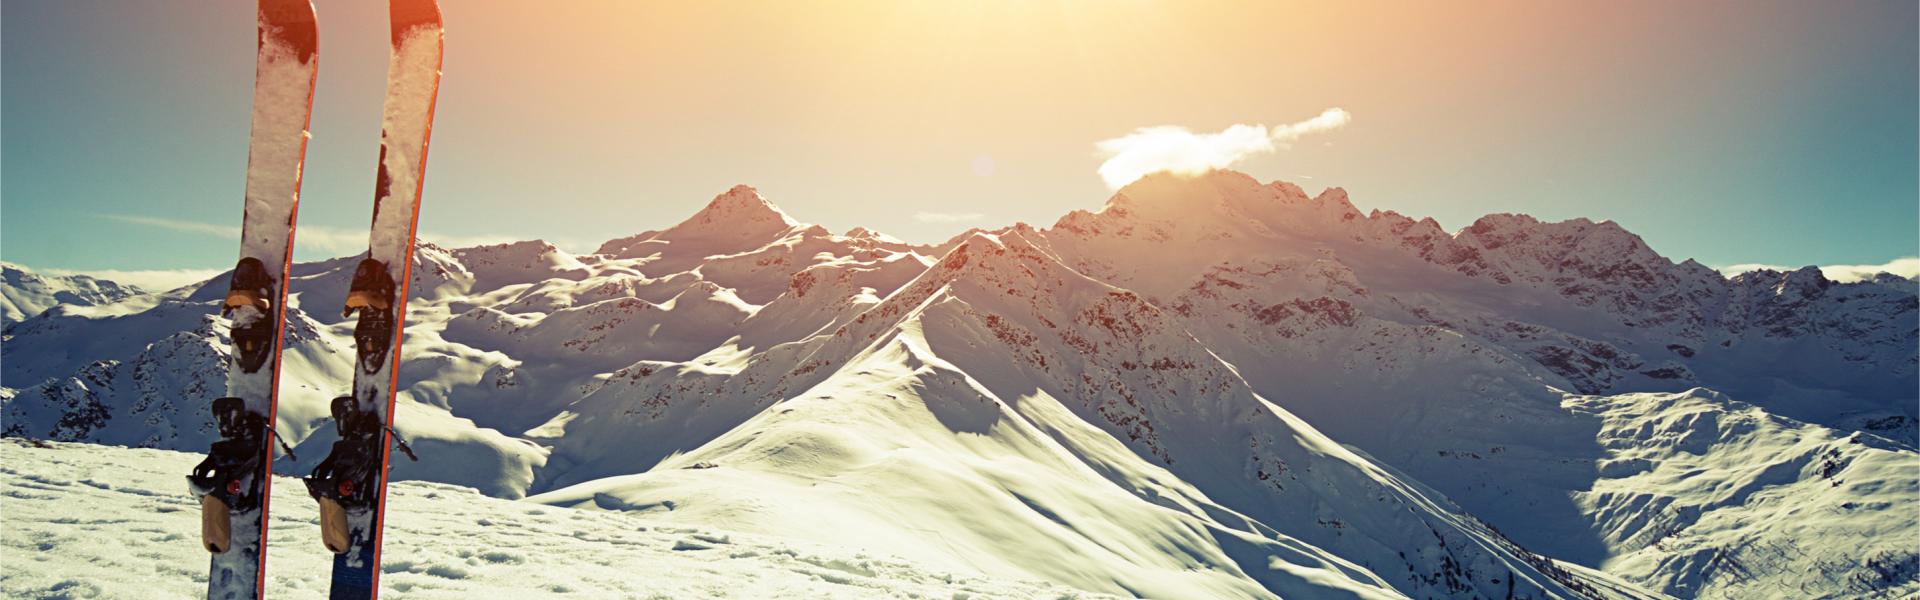 Skiurlaub in ganz Europa: So macht der Winter Spaß! - Casamundo